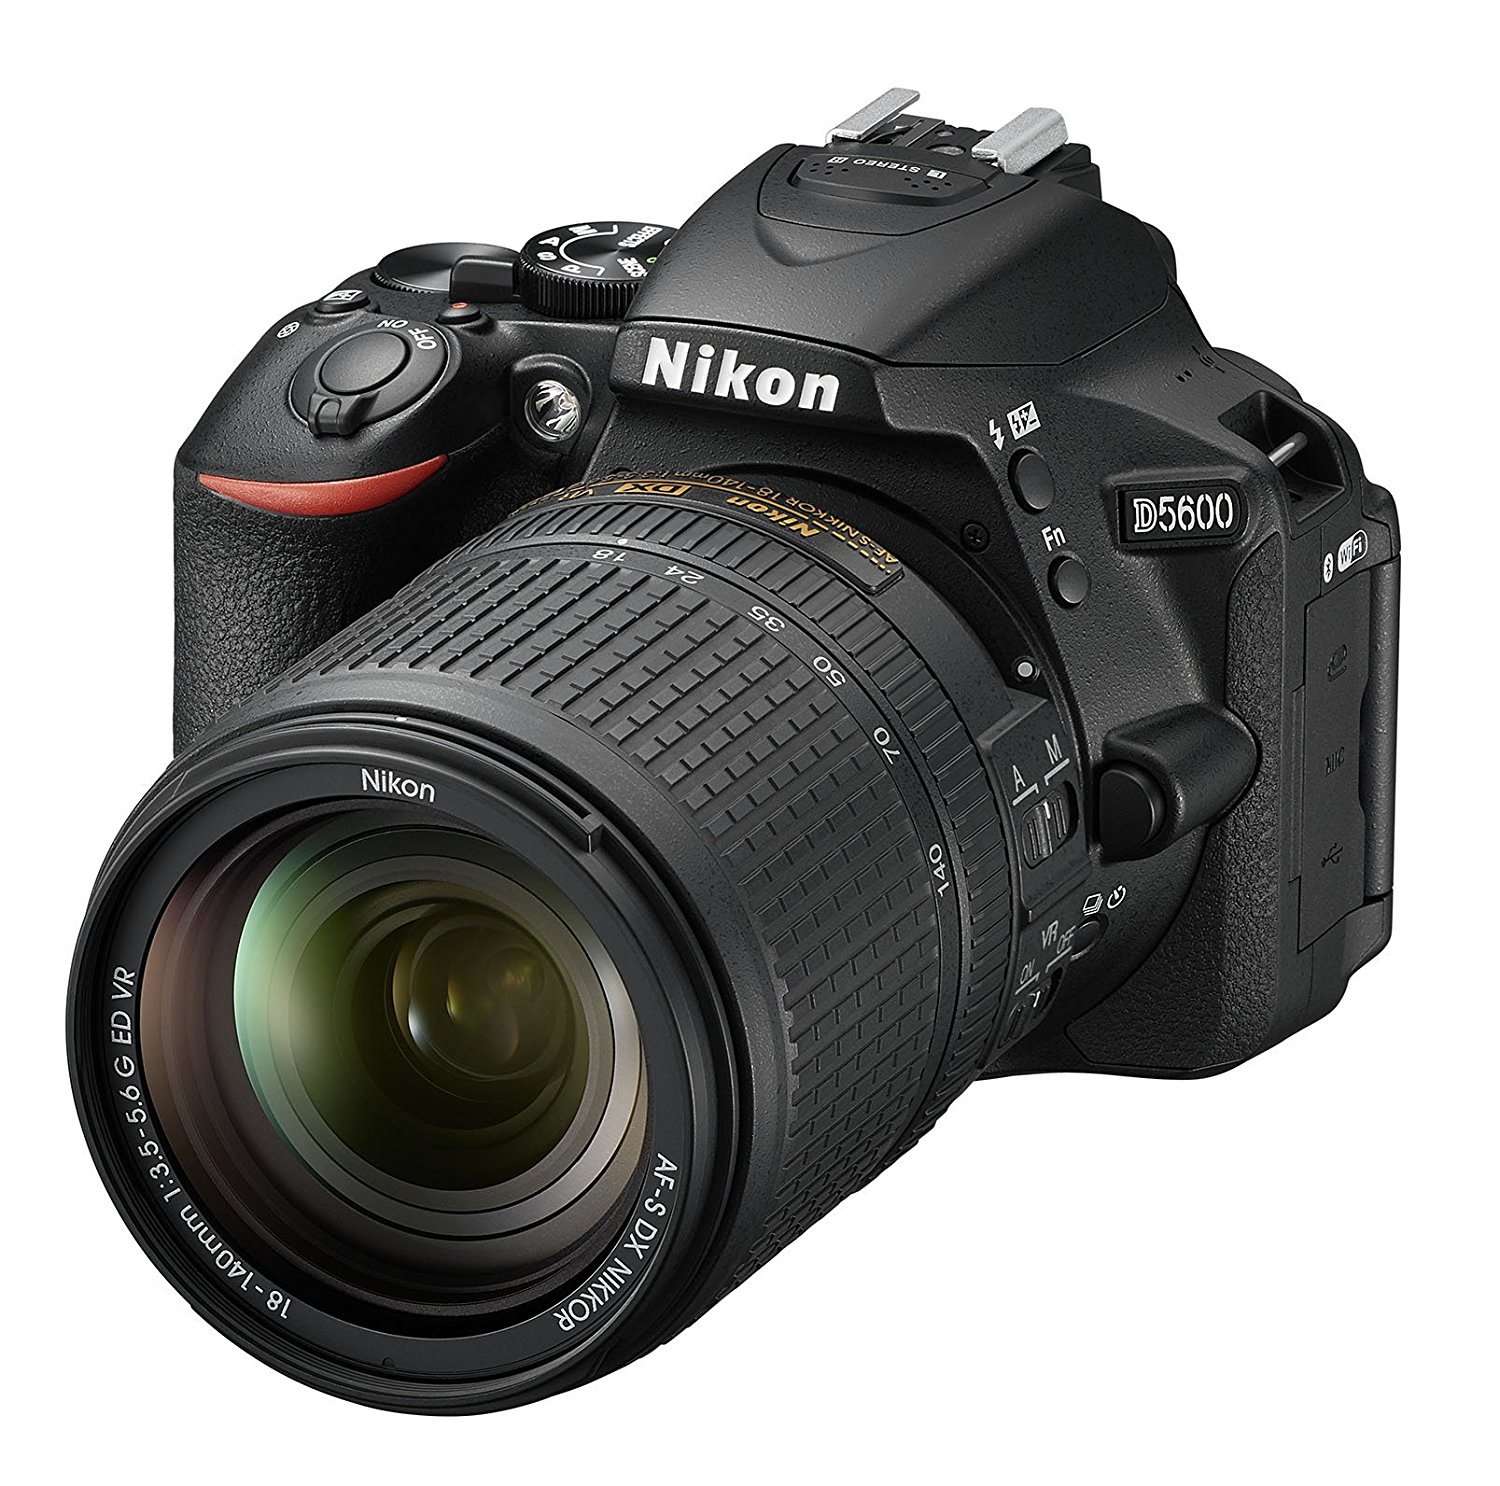 Nikon D5600 كاميرا SLR رقمية بصيغة DX مع عدسة AF-S DX NIKKOR مقاس 18-140 مم f / 3.5-5.6G ED VR